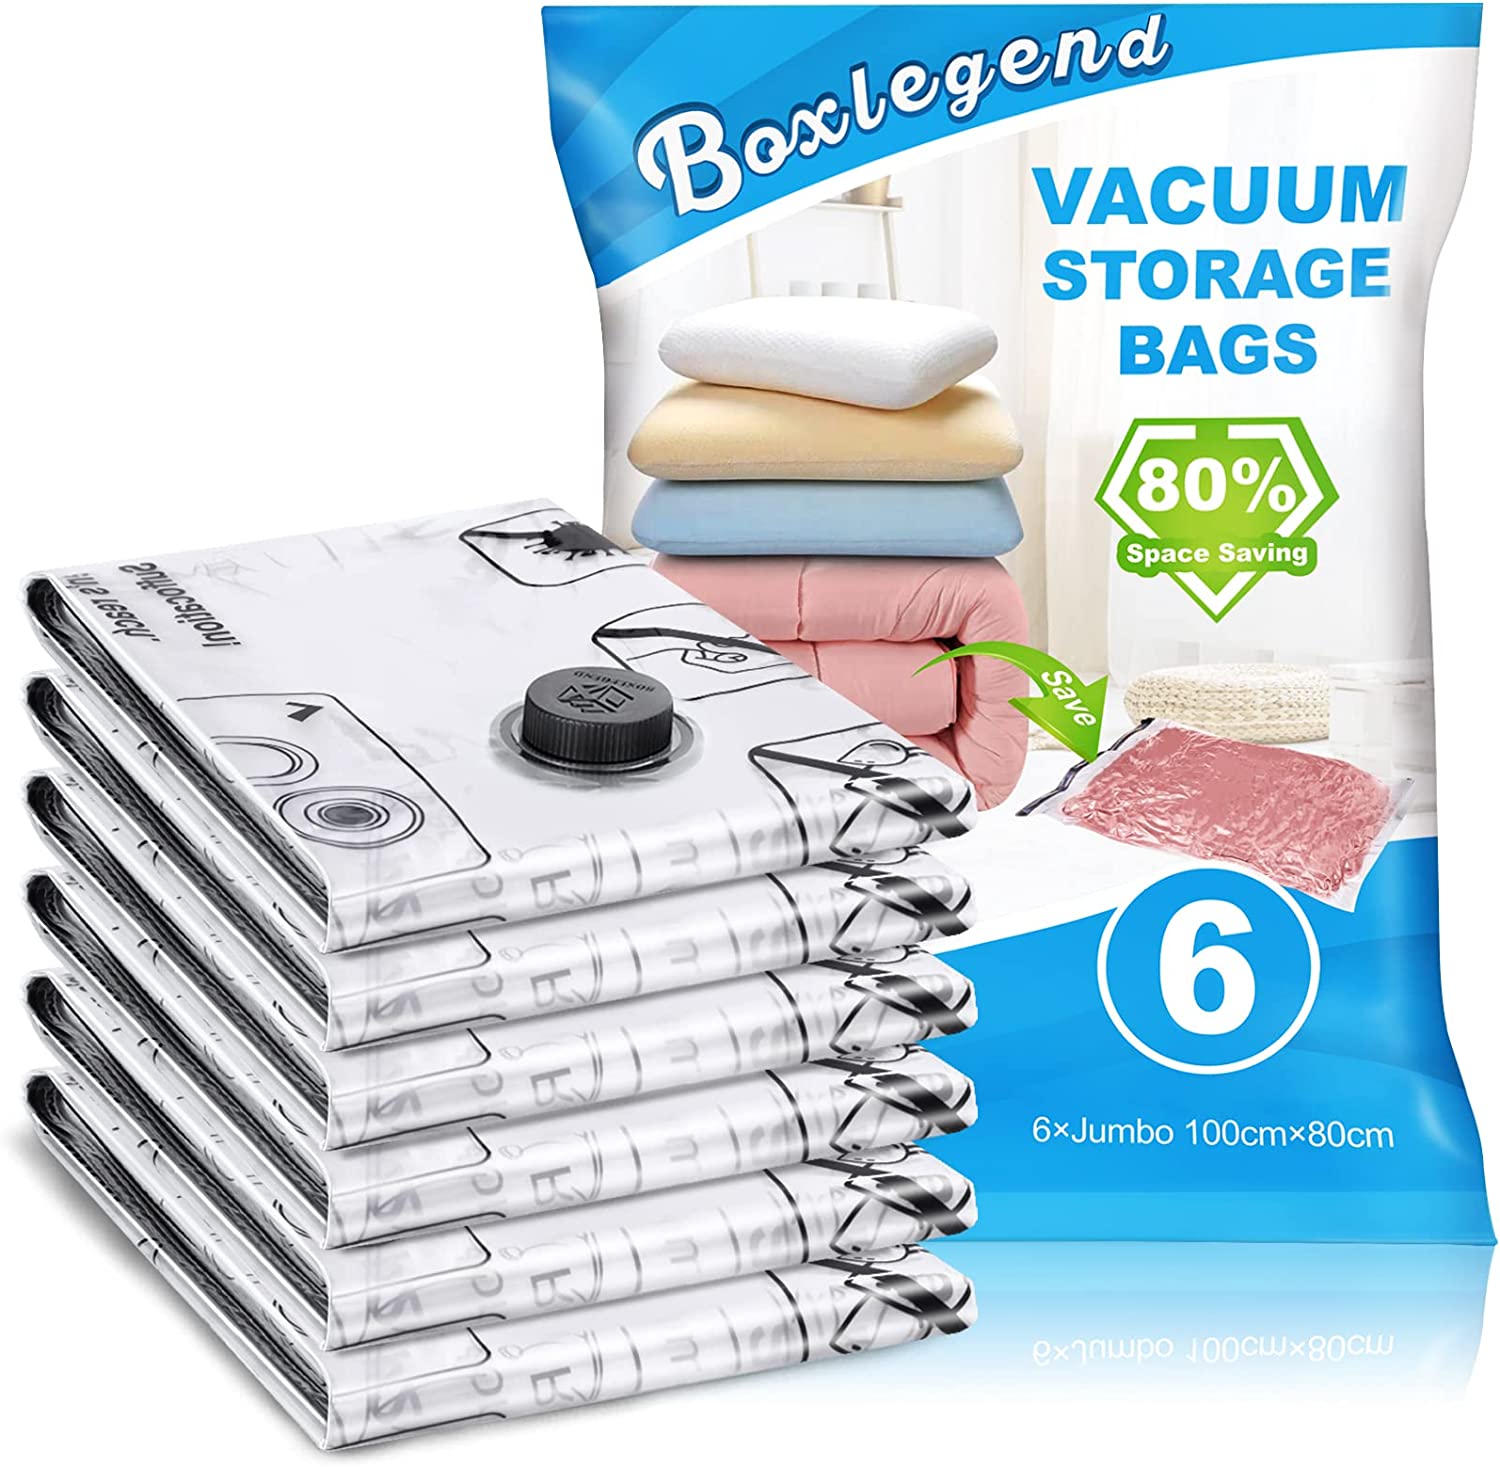  Spacesaver Vacuum Storage Bags (Jumbo 2 Pack) Save 80